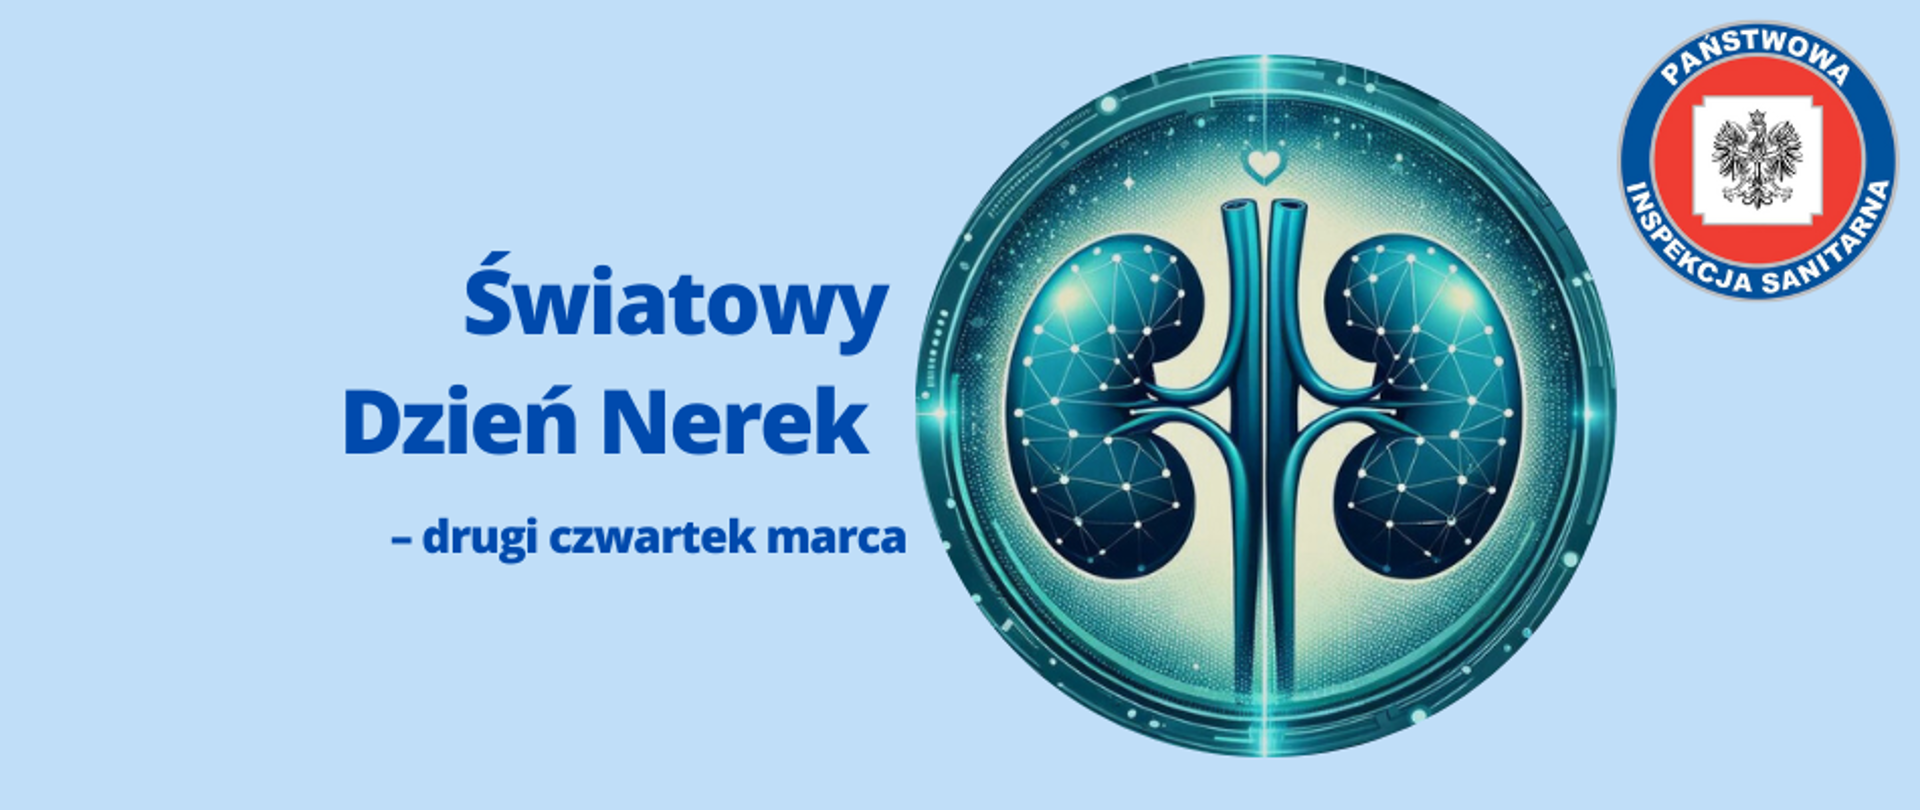 Banner promujący Światowy Dzień Nerek z grafiką stylizowanej nerki w nowoczesnym designie na niebieskim tle, z tekstem "Światowy Dzień Nerek - drugi czwartek marca" i logo Państwowej Inspekcji Sanitarnej